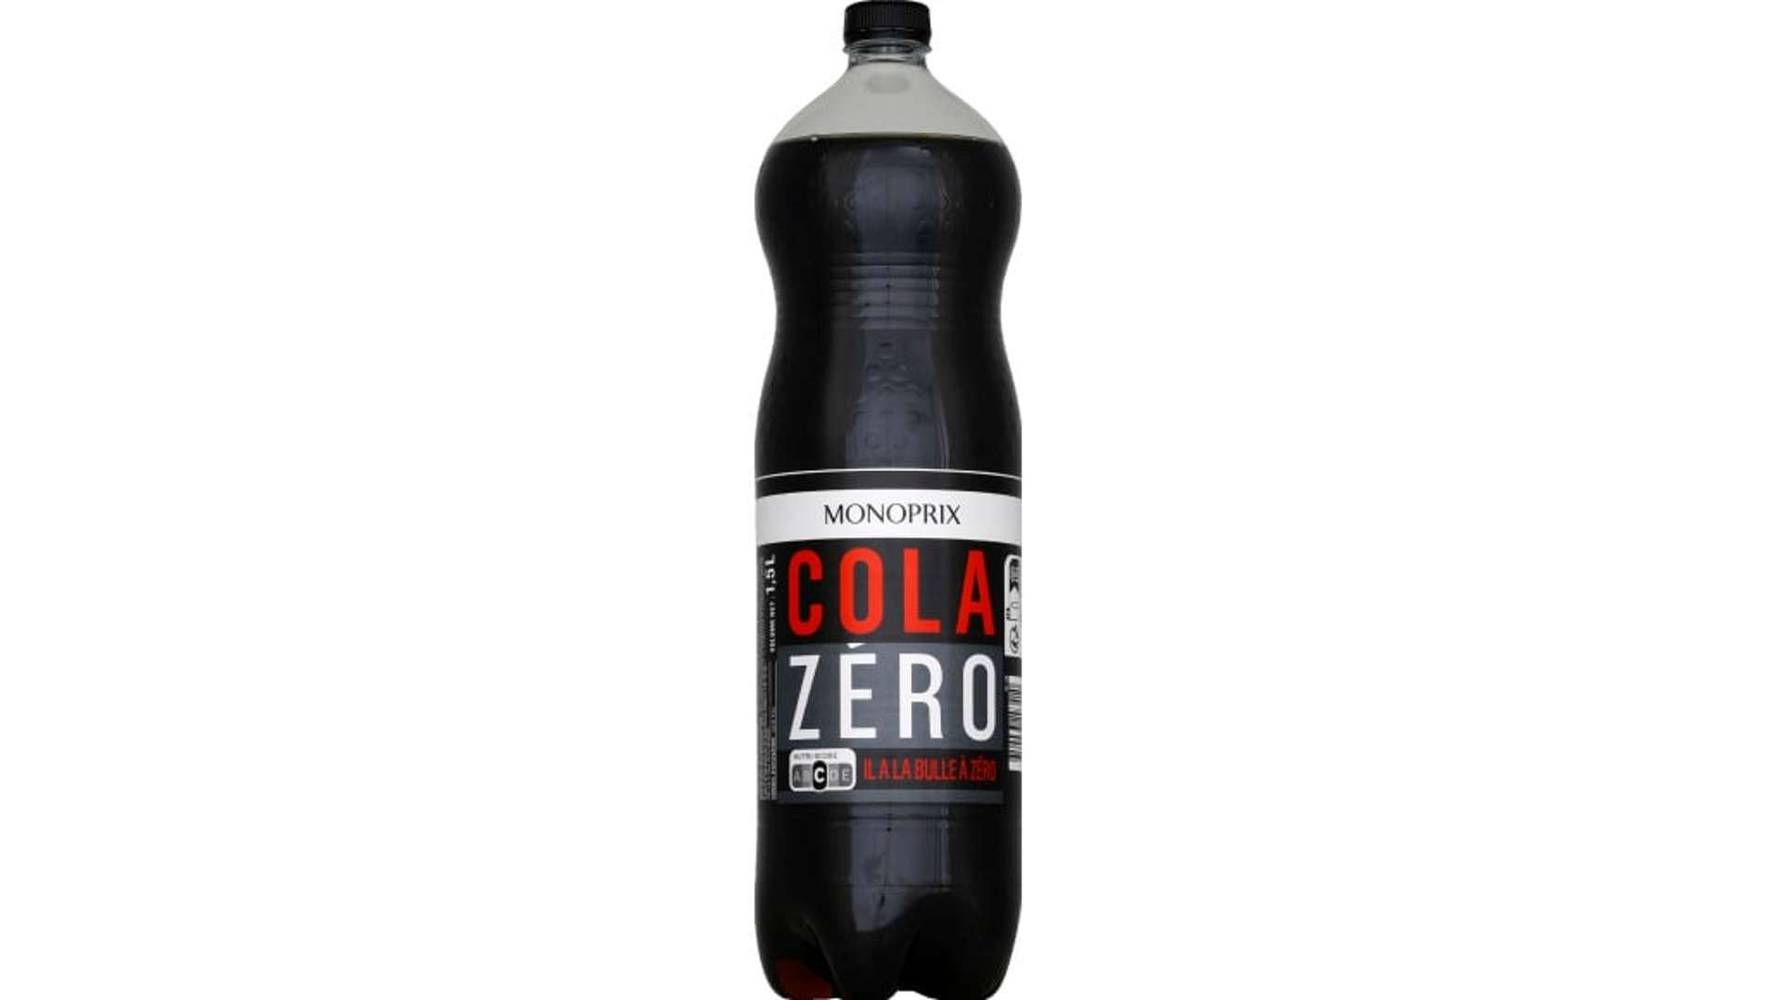 Monoprix Cola zéro La bouteille de 1,5 l